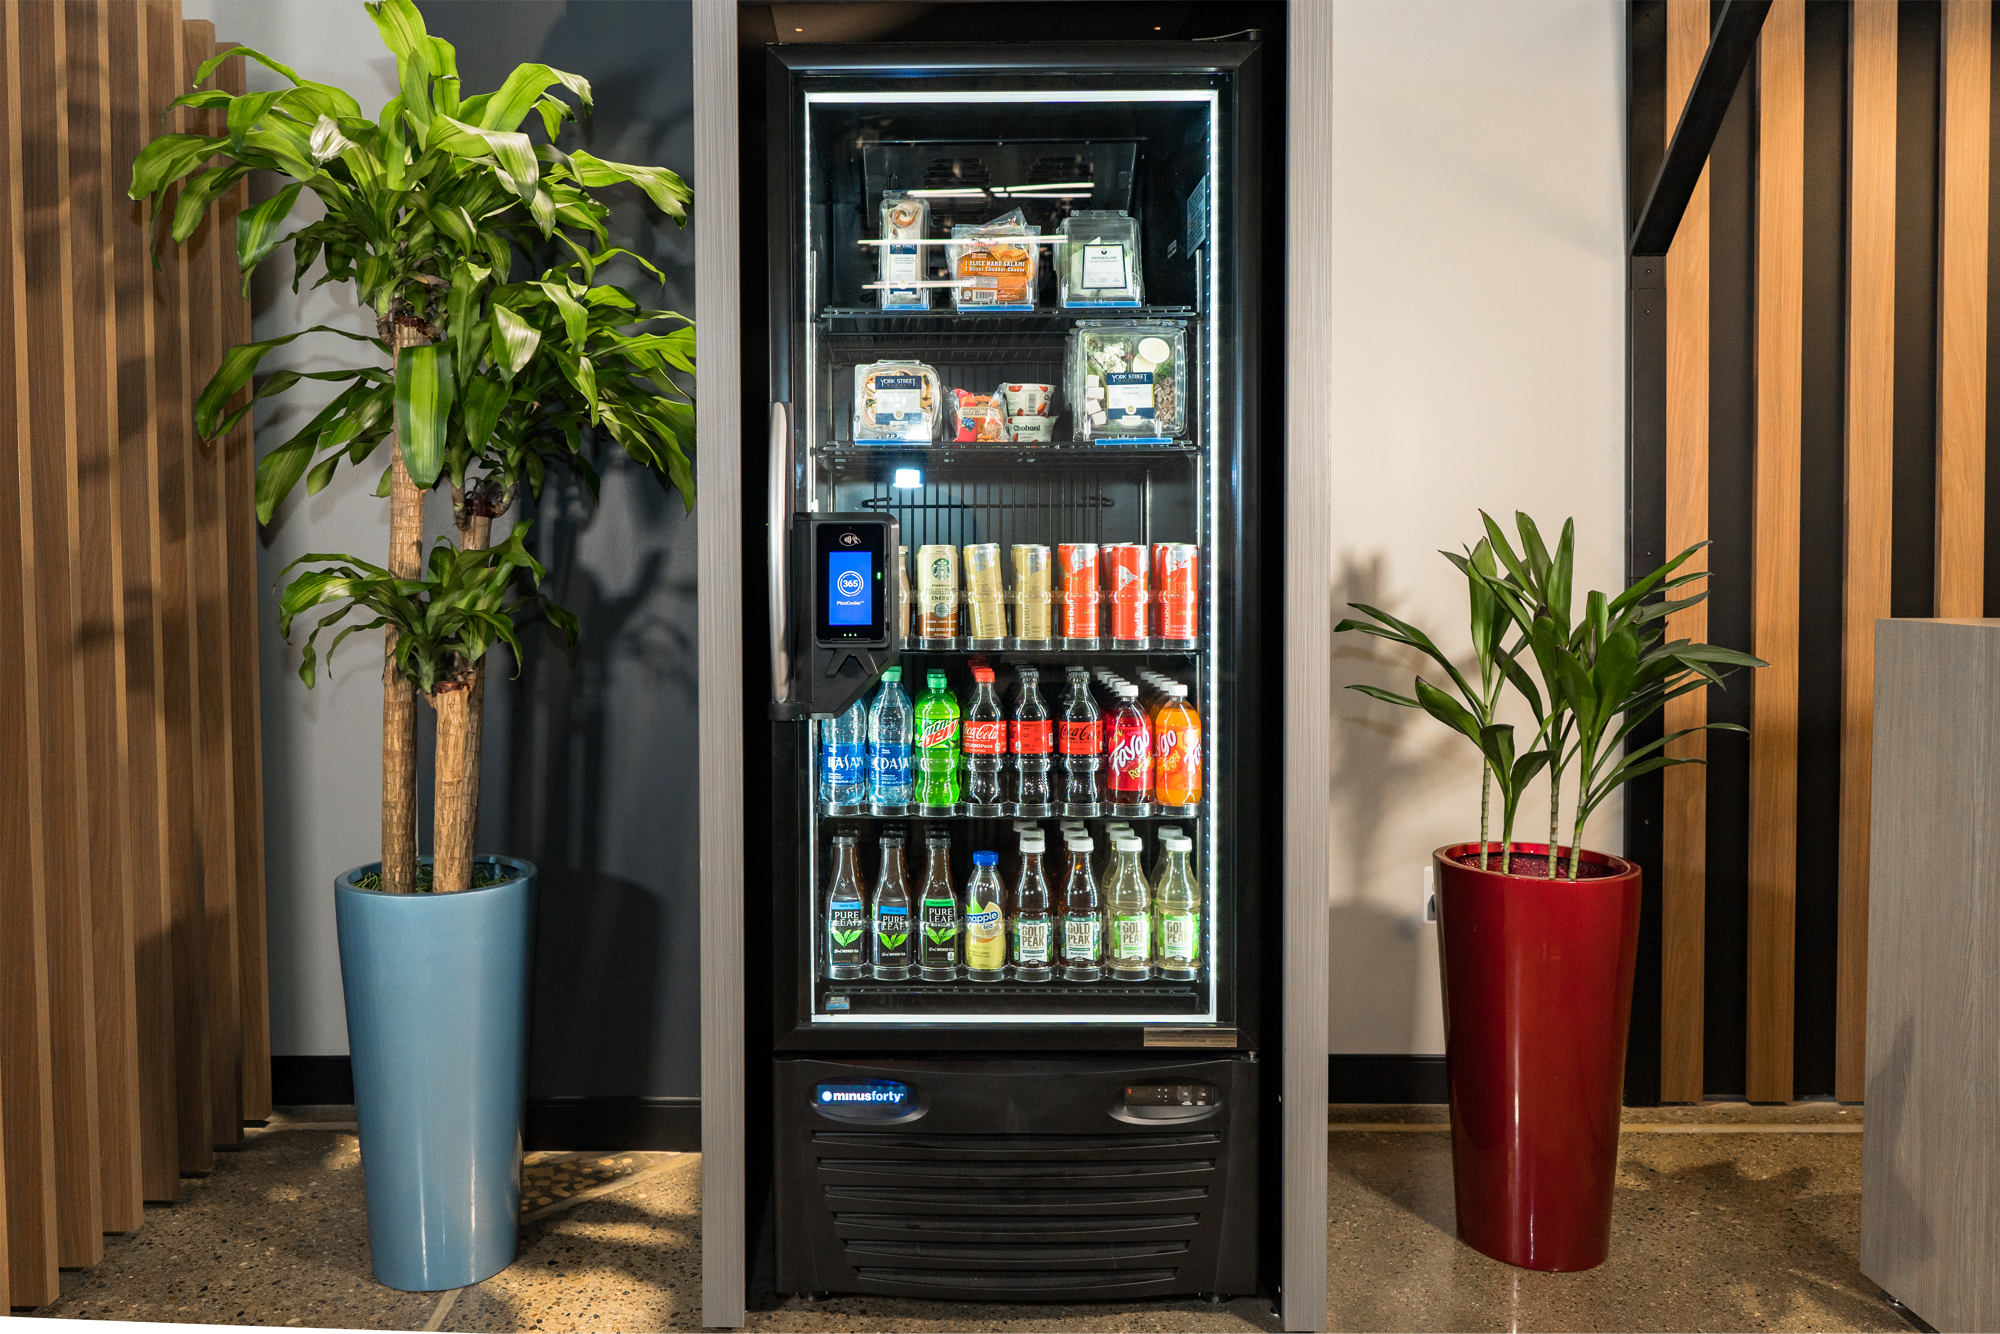 Smart Vending Breakroom modern vending machine